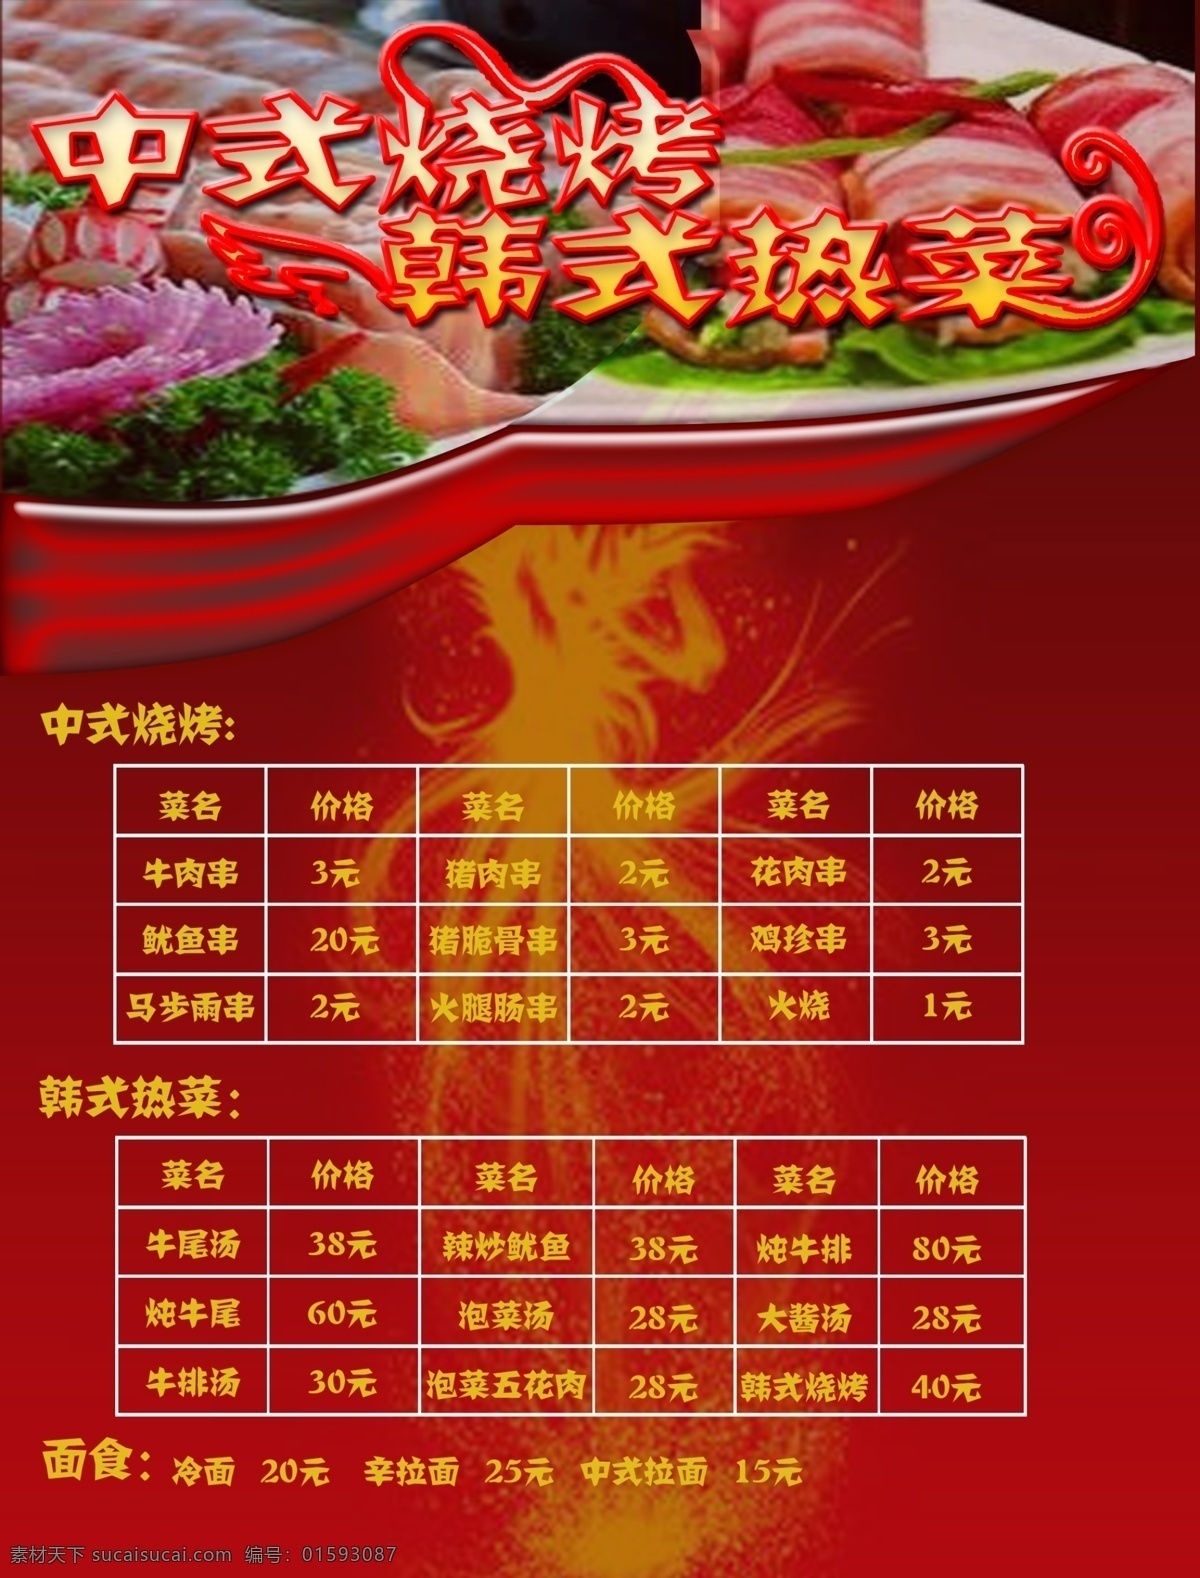 烧烤菜单 烧烤 中式 韩式 热菜 菜单 价格 红色 原创 生活百科 餐饮美食